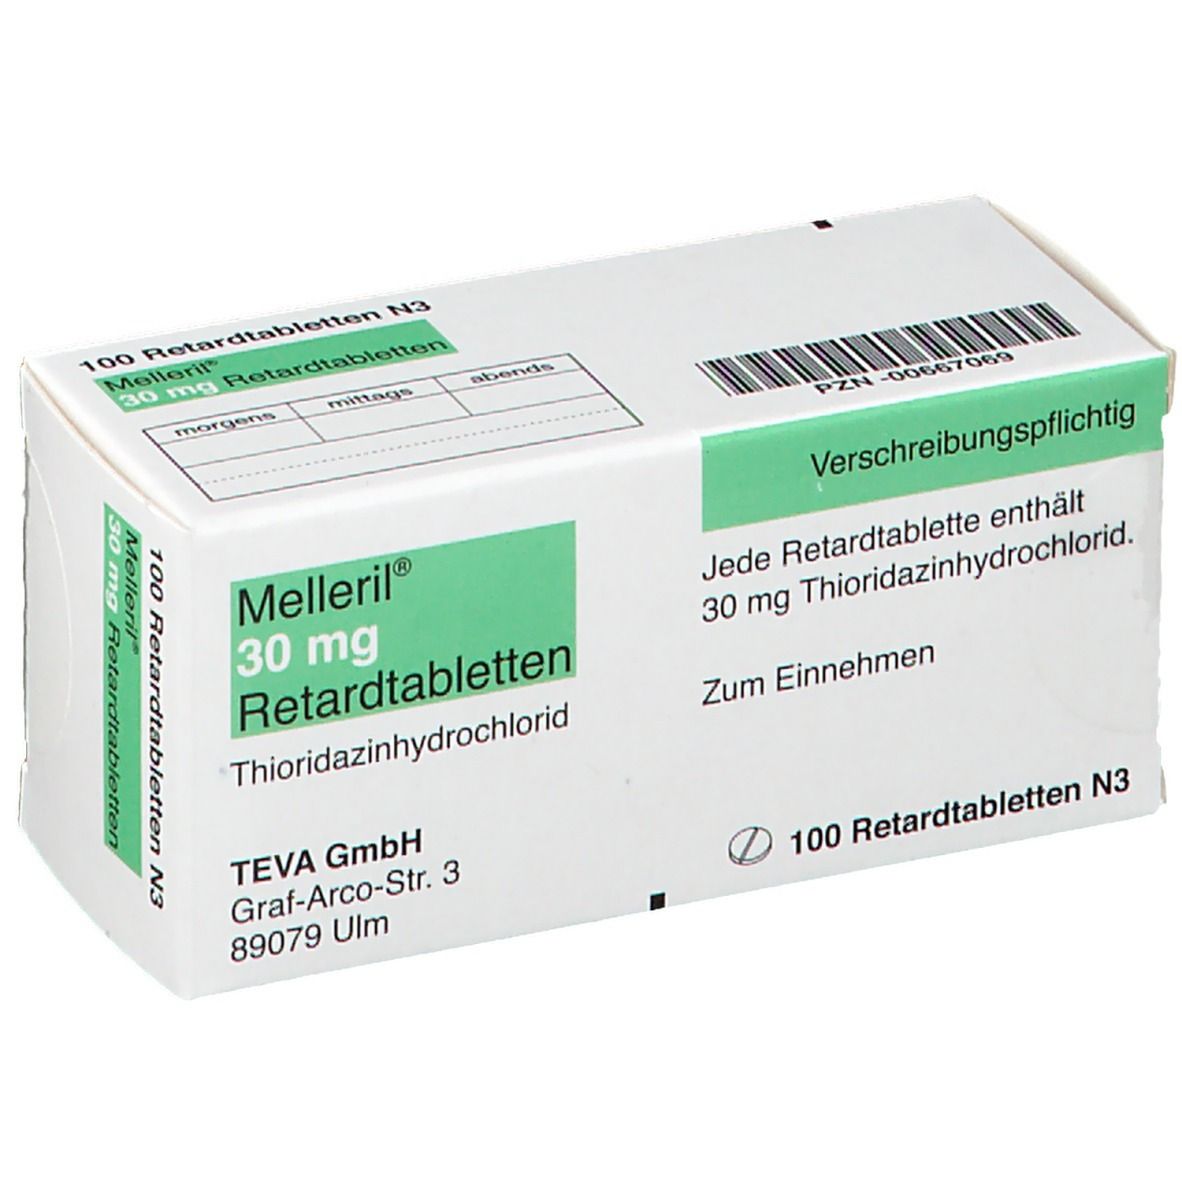 Melleril® 30 mg